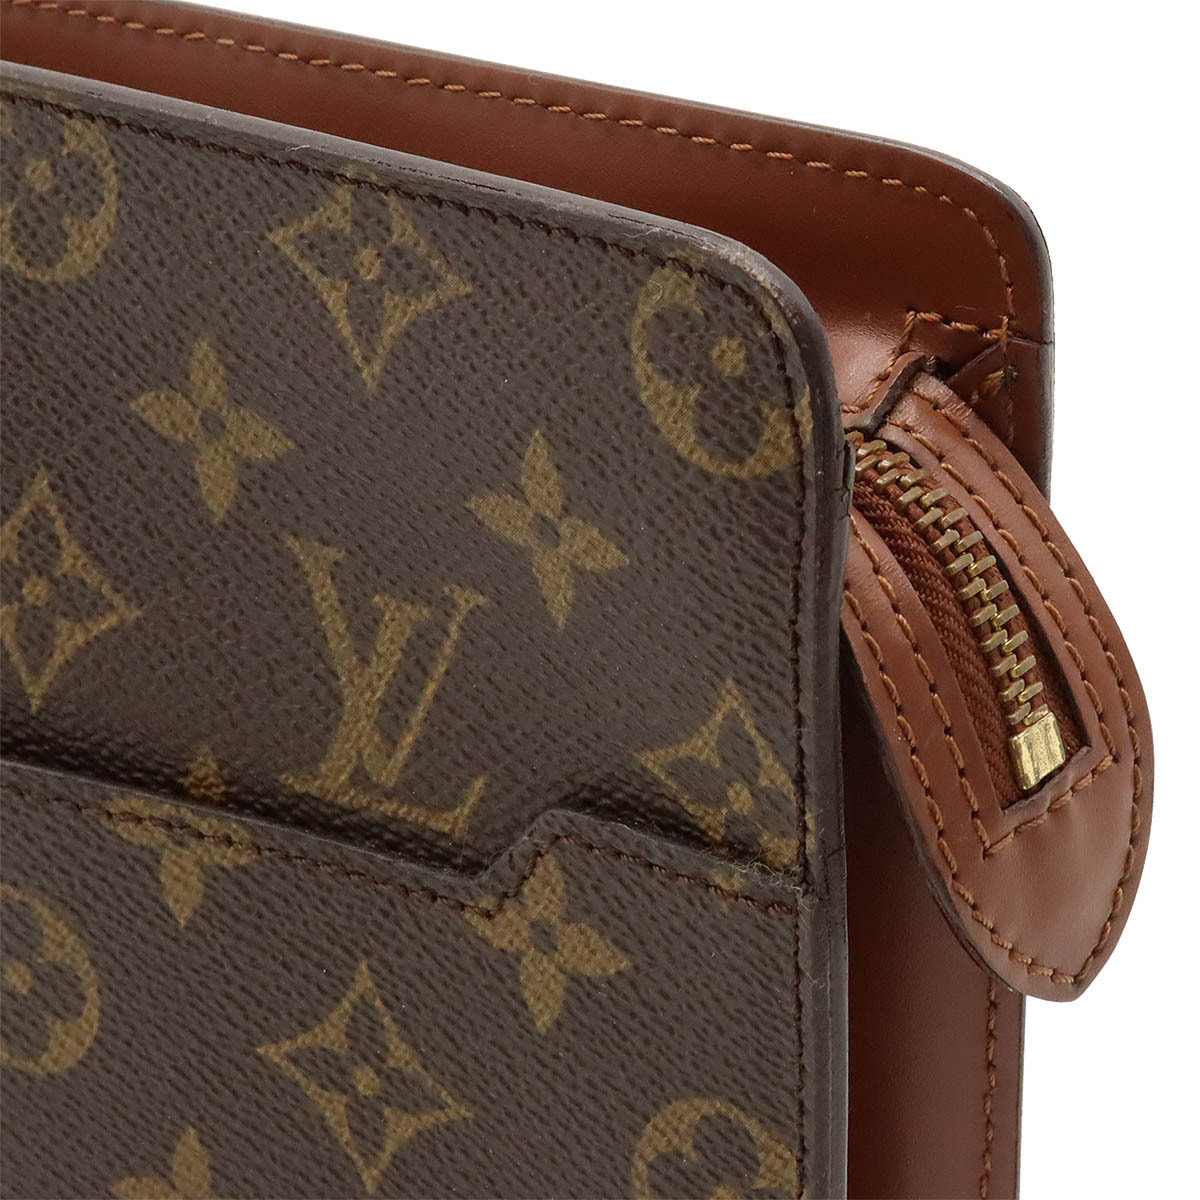 LOUIS VUITTON Louis Vuitton monogram pochette Homme second bag clutch bag 